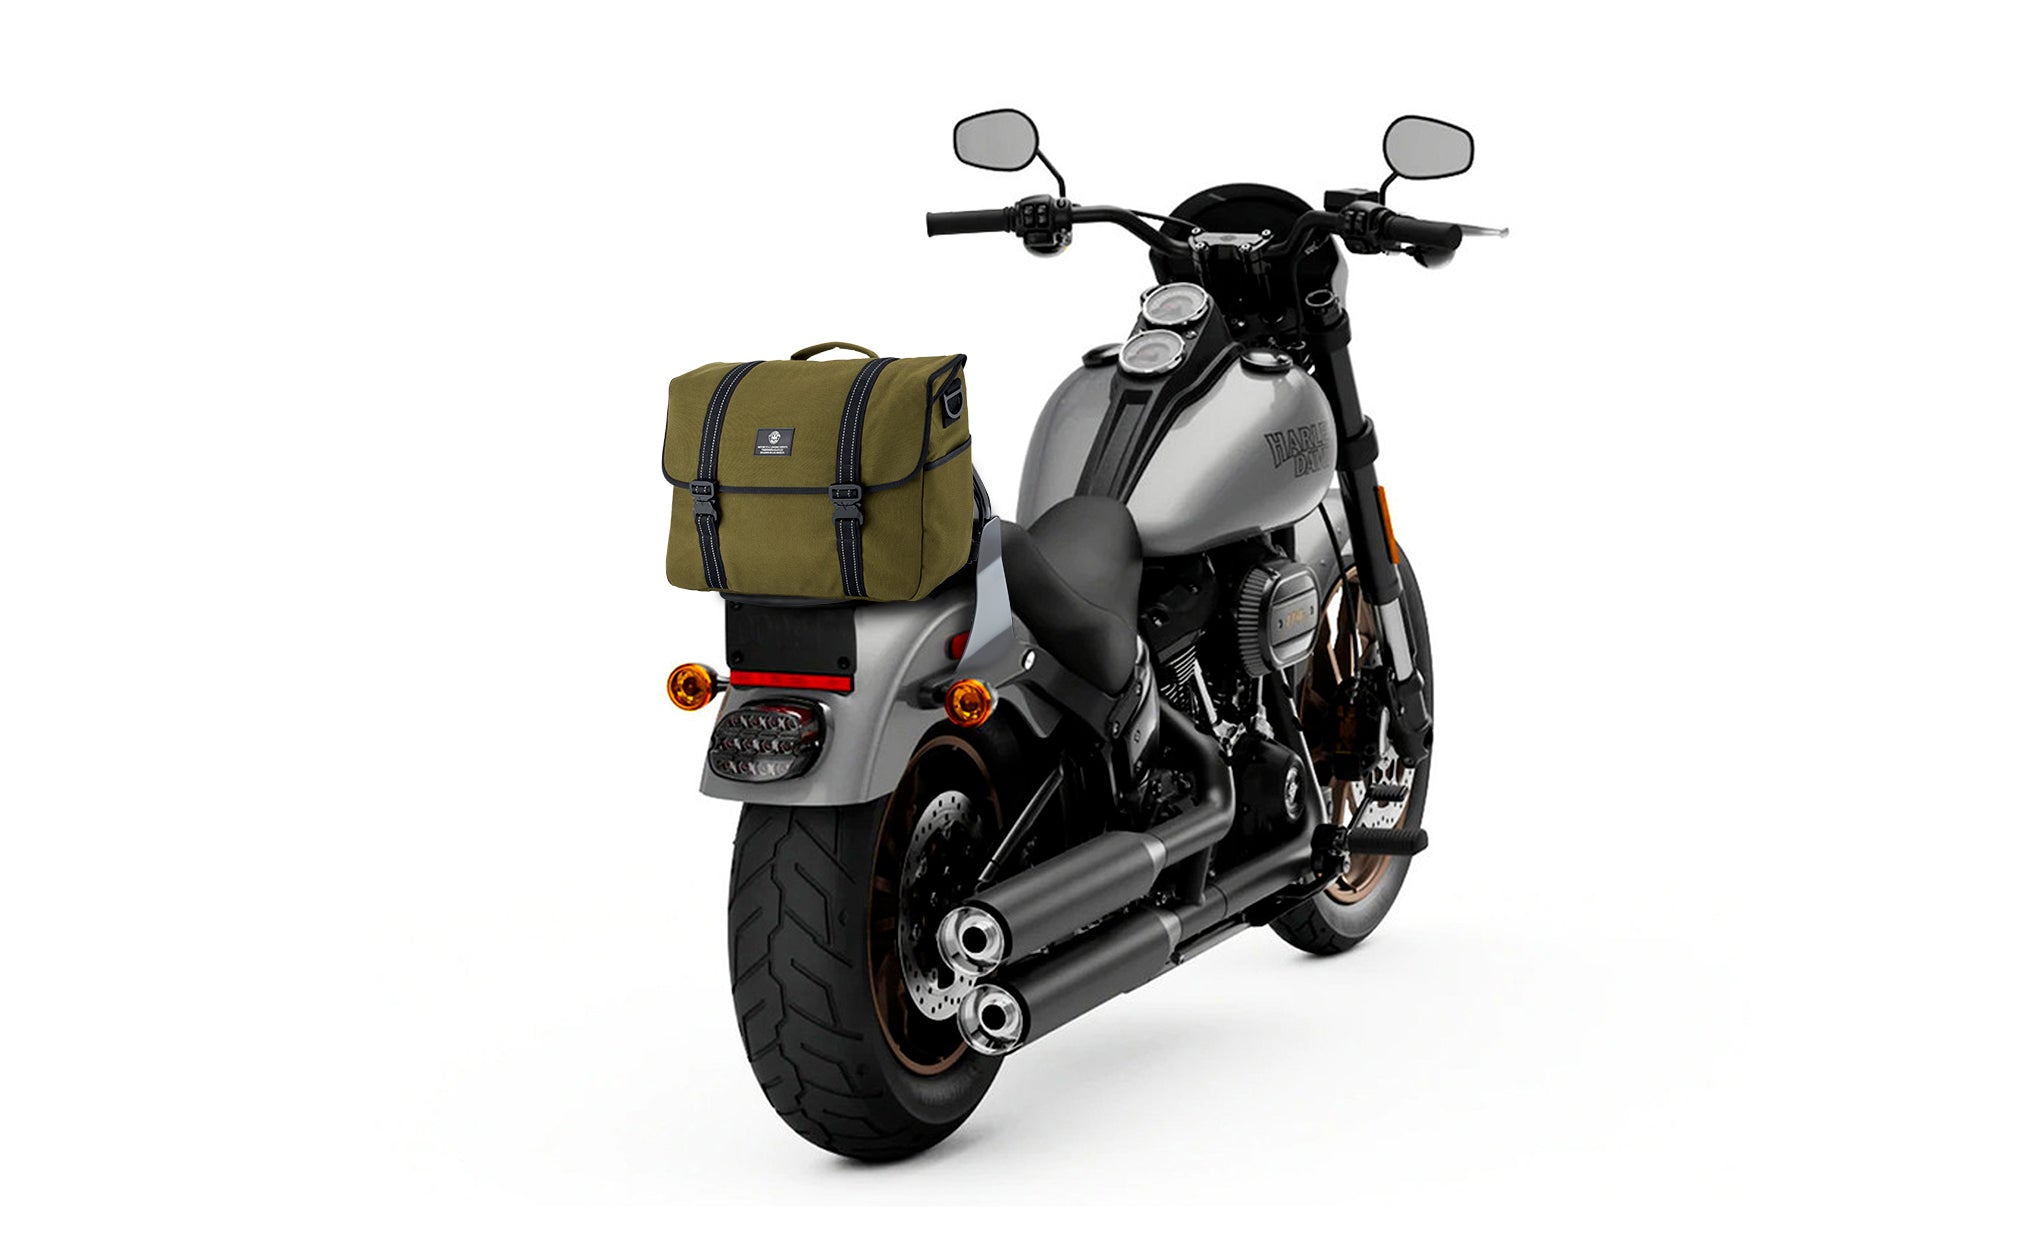 Viking Duo-tone Medium Honda Motorcycle Messenger Bag Green/Black Bag on Bike View @expand